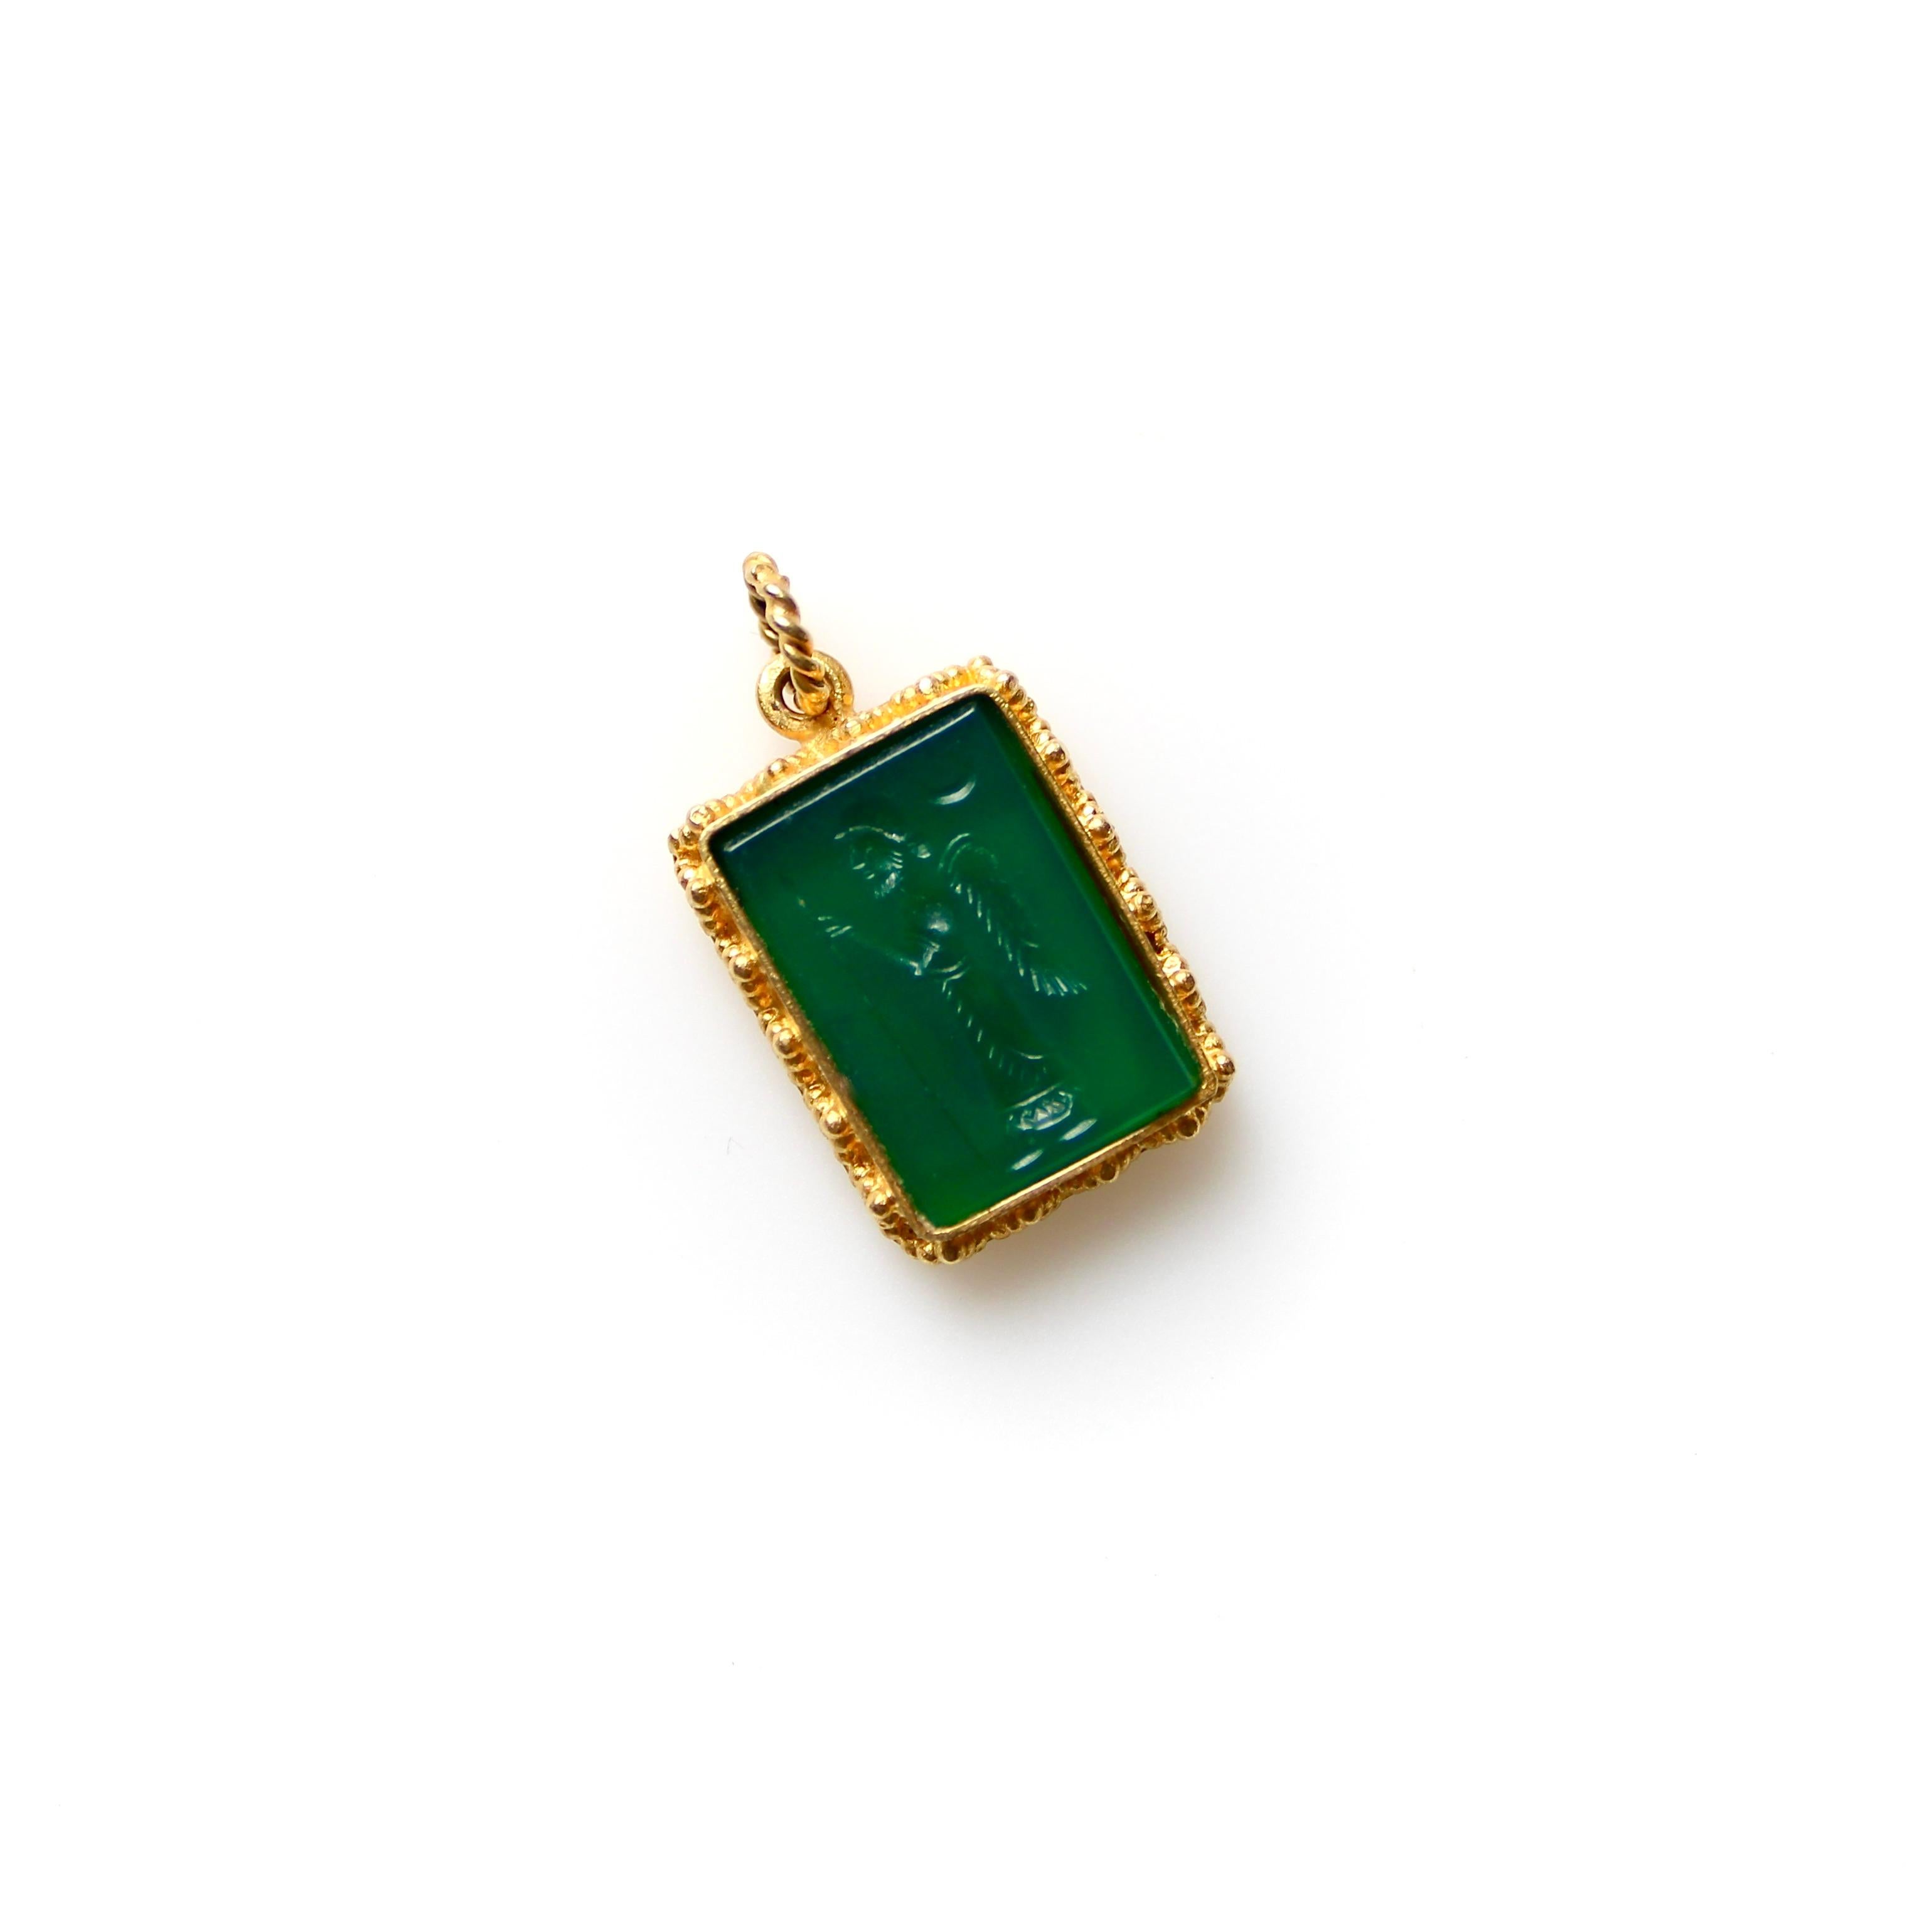 Ce pendentif vintage en or 22k présente une intaille en calcédoine verte sculptée de l'image de Zoroastre. L'or présente une belle granulation dans le style néo-étrusque, et l'intaille est sertie dans le pendentif et se présente comme une minuscule